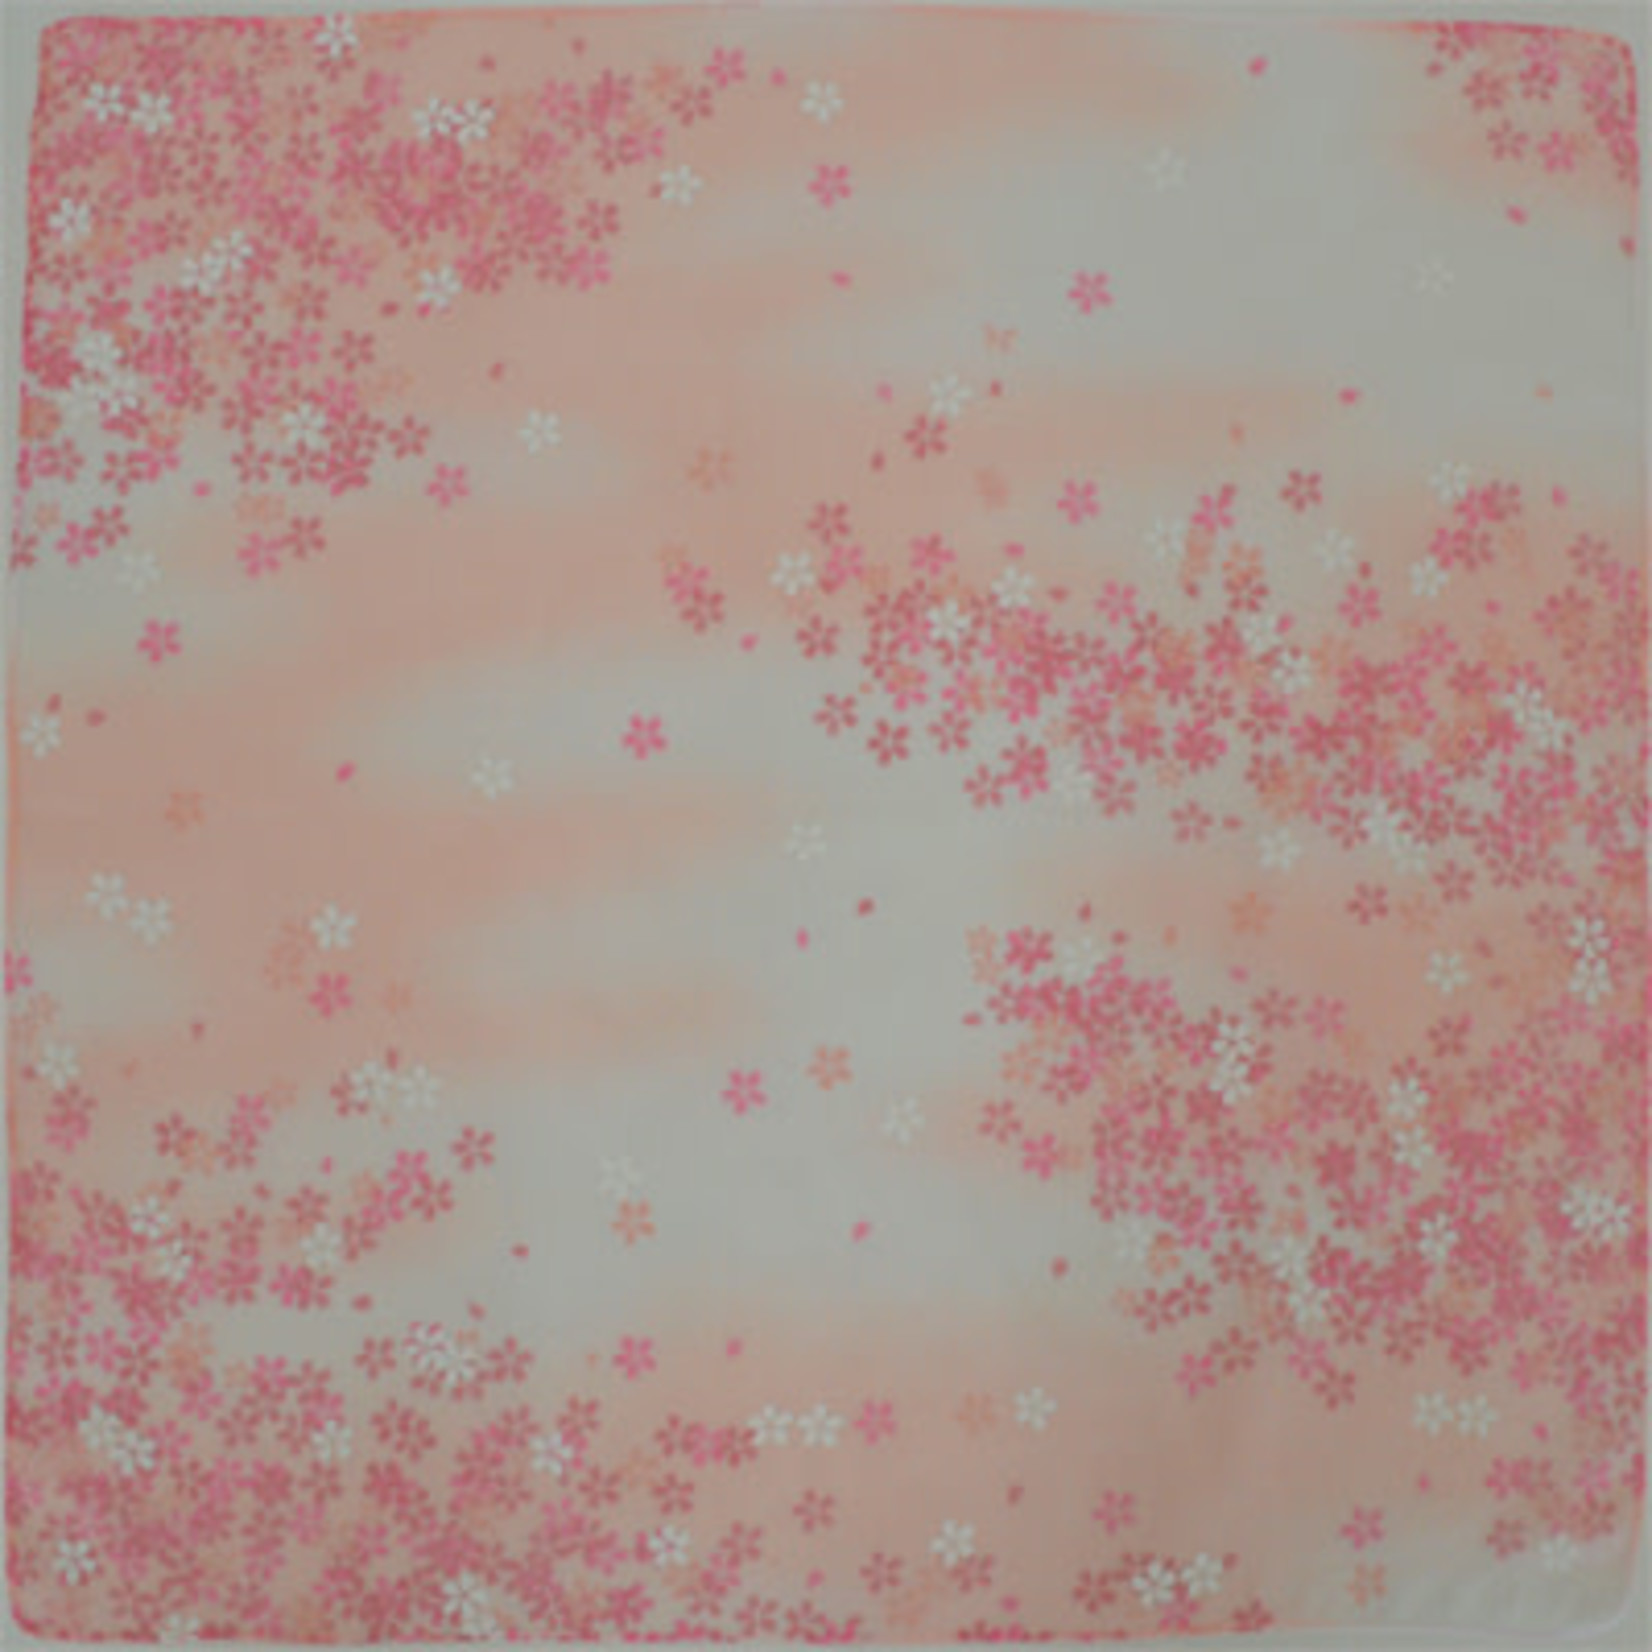 Handkerchief - Lg format Sakura Full Bloom - 1510-1